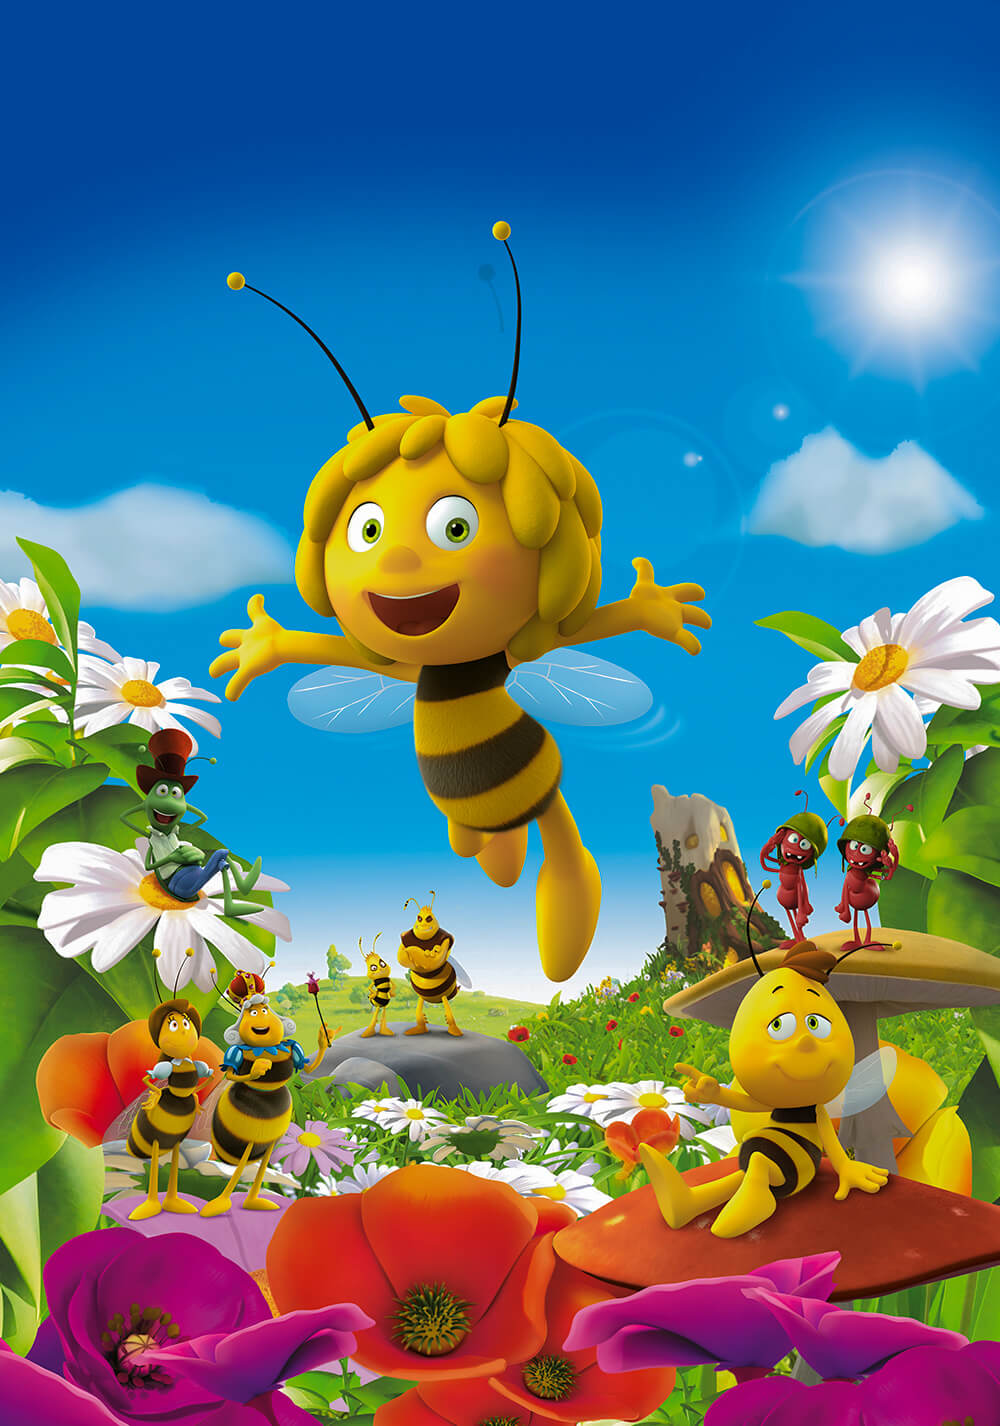 مایا زنبور عسل (Maya the Bee Movie)